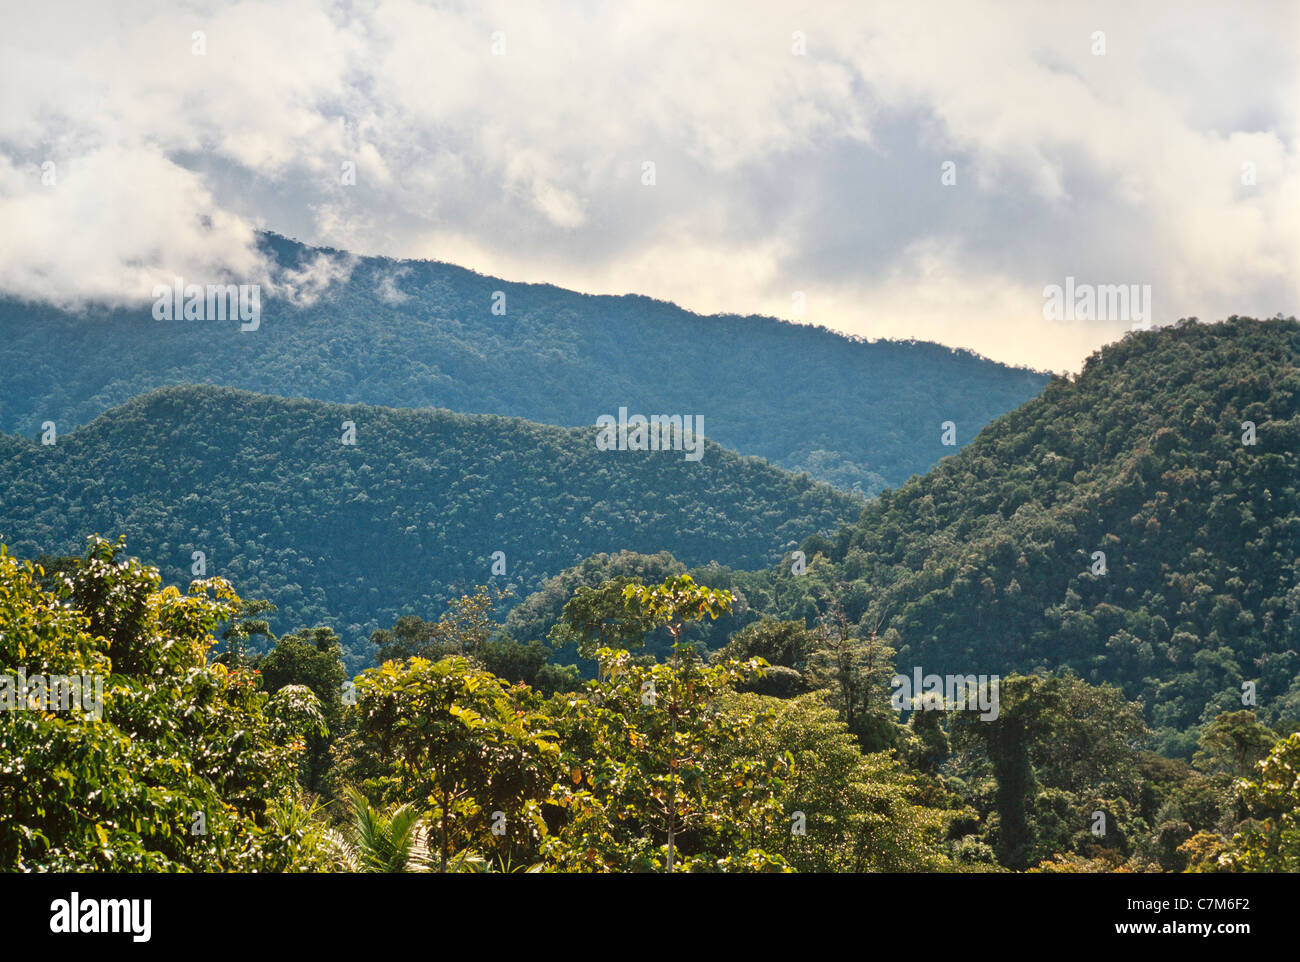 Jardins tropicaux boisés collines karstiques, Mulu National Park, Sarawak, Bornéo, Malaisie Orientale Banque D'Images